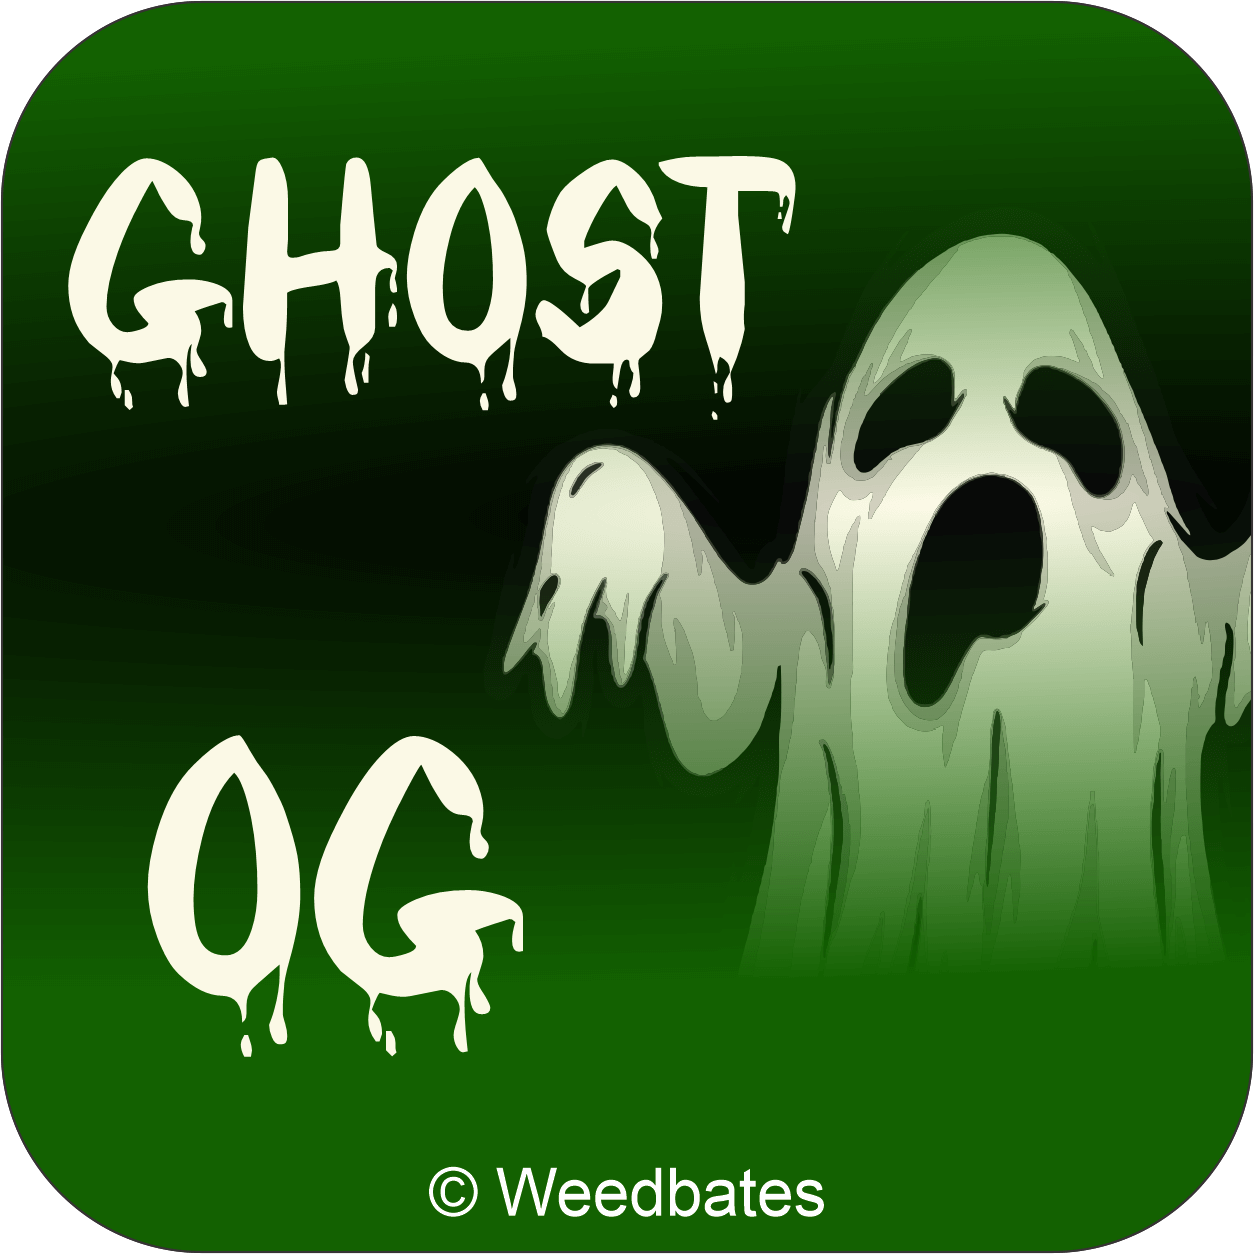 Ghost OG